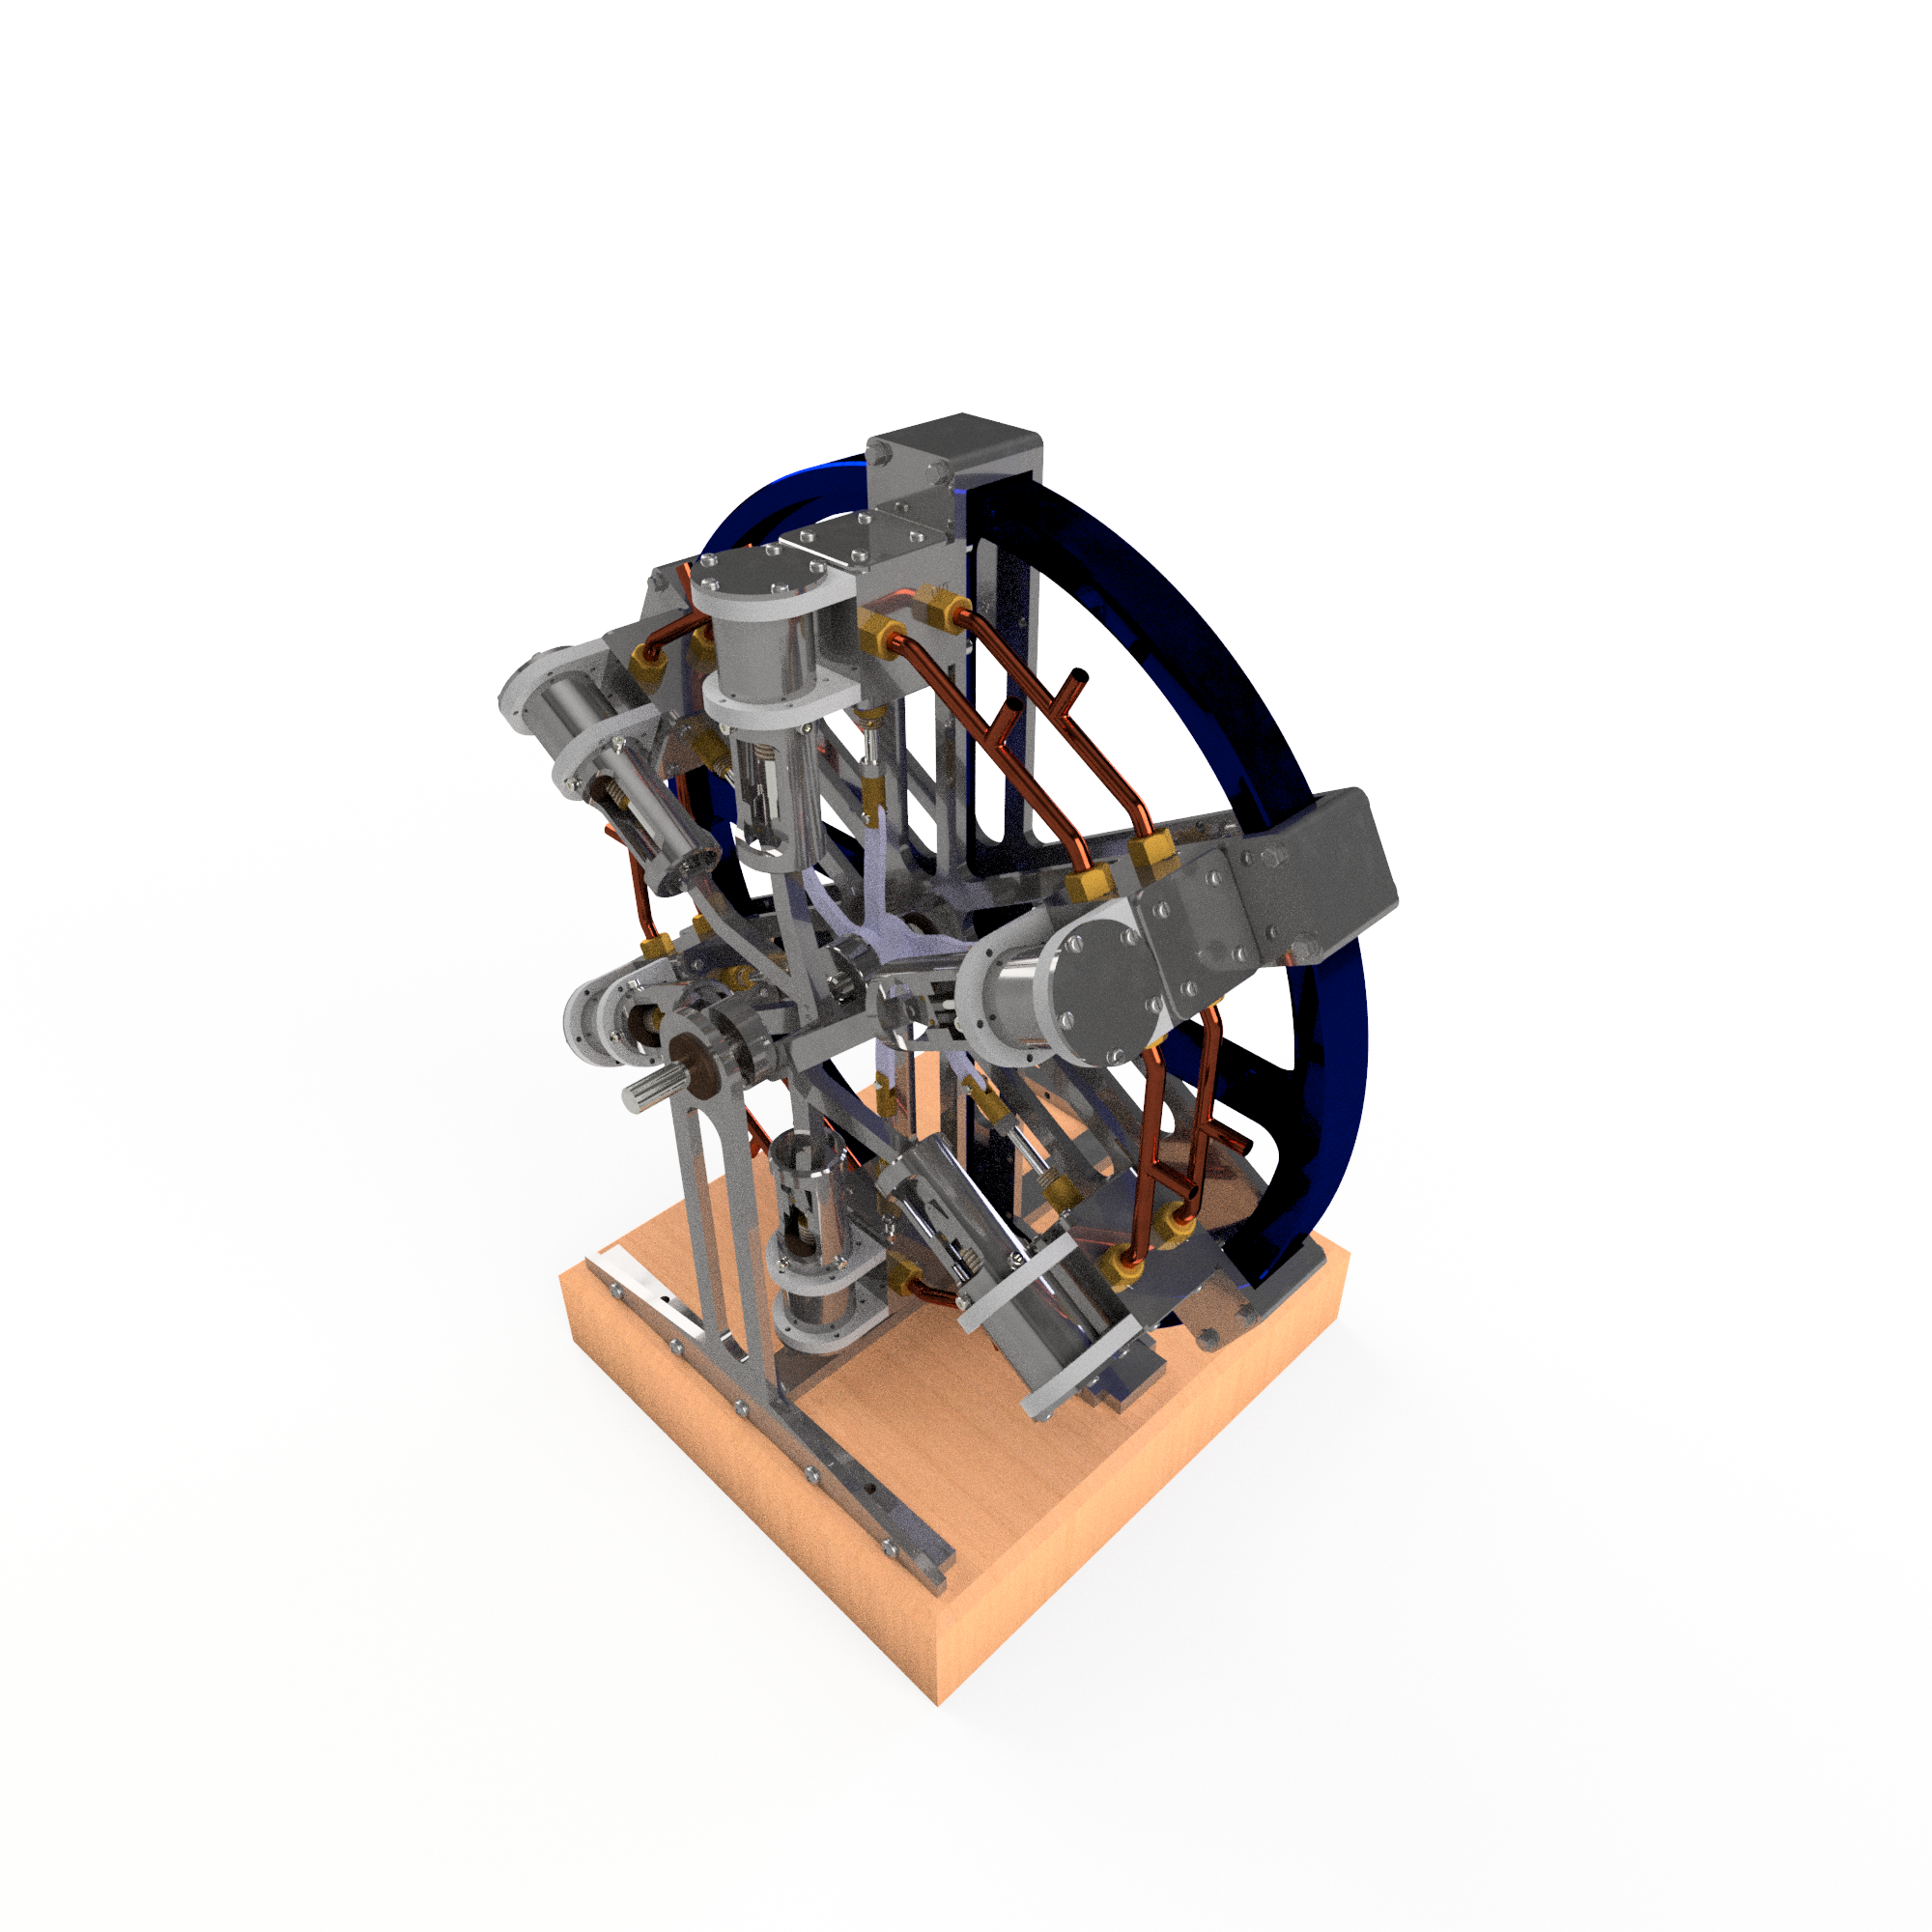 J.A.M DE WALL五缸星形径向发动机 附平面工程图